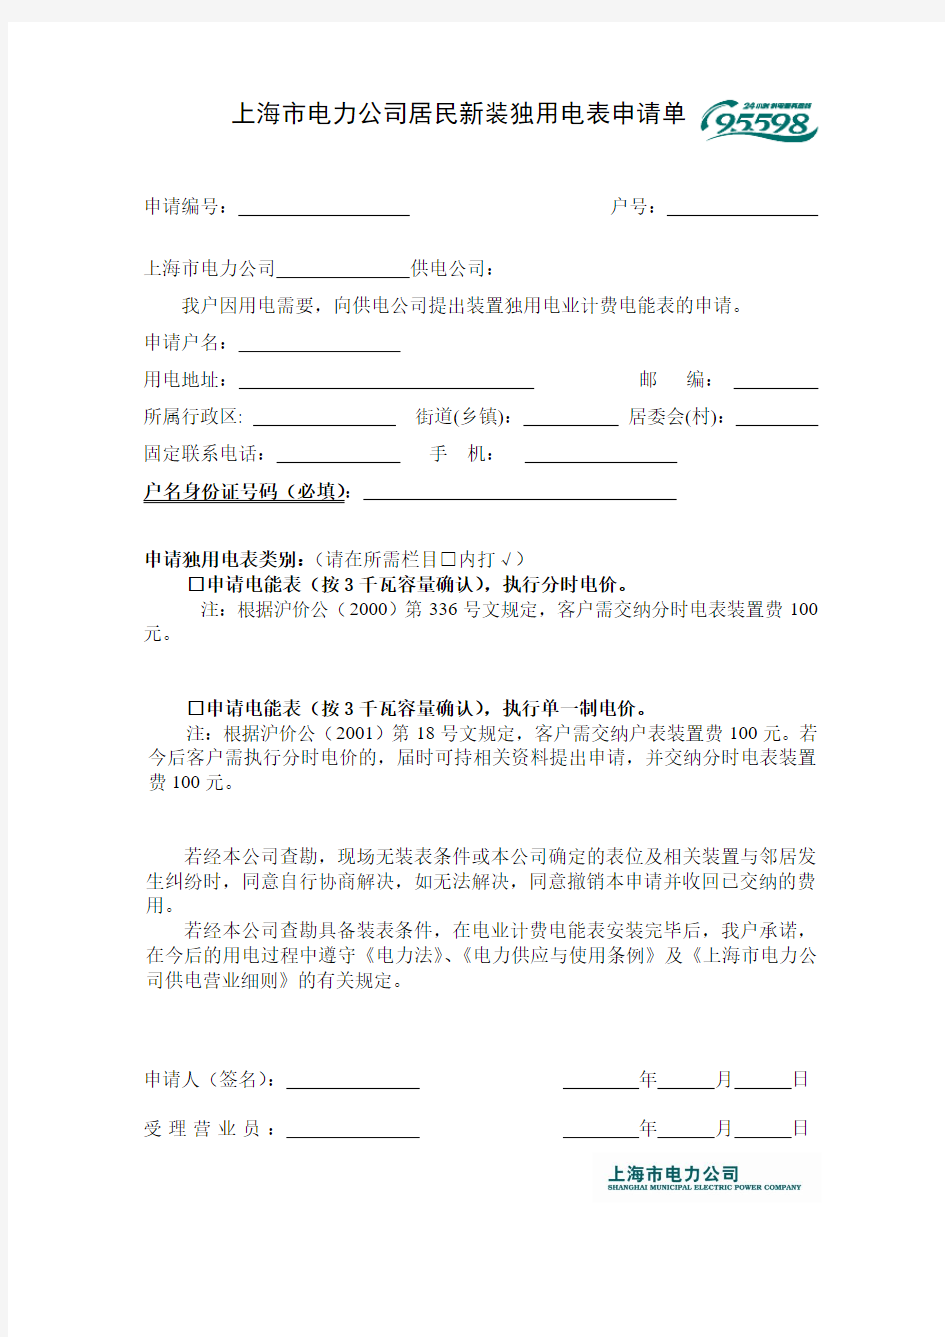 上海市电力公司居民新装独用电表申请单